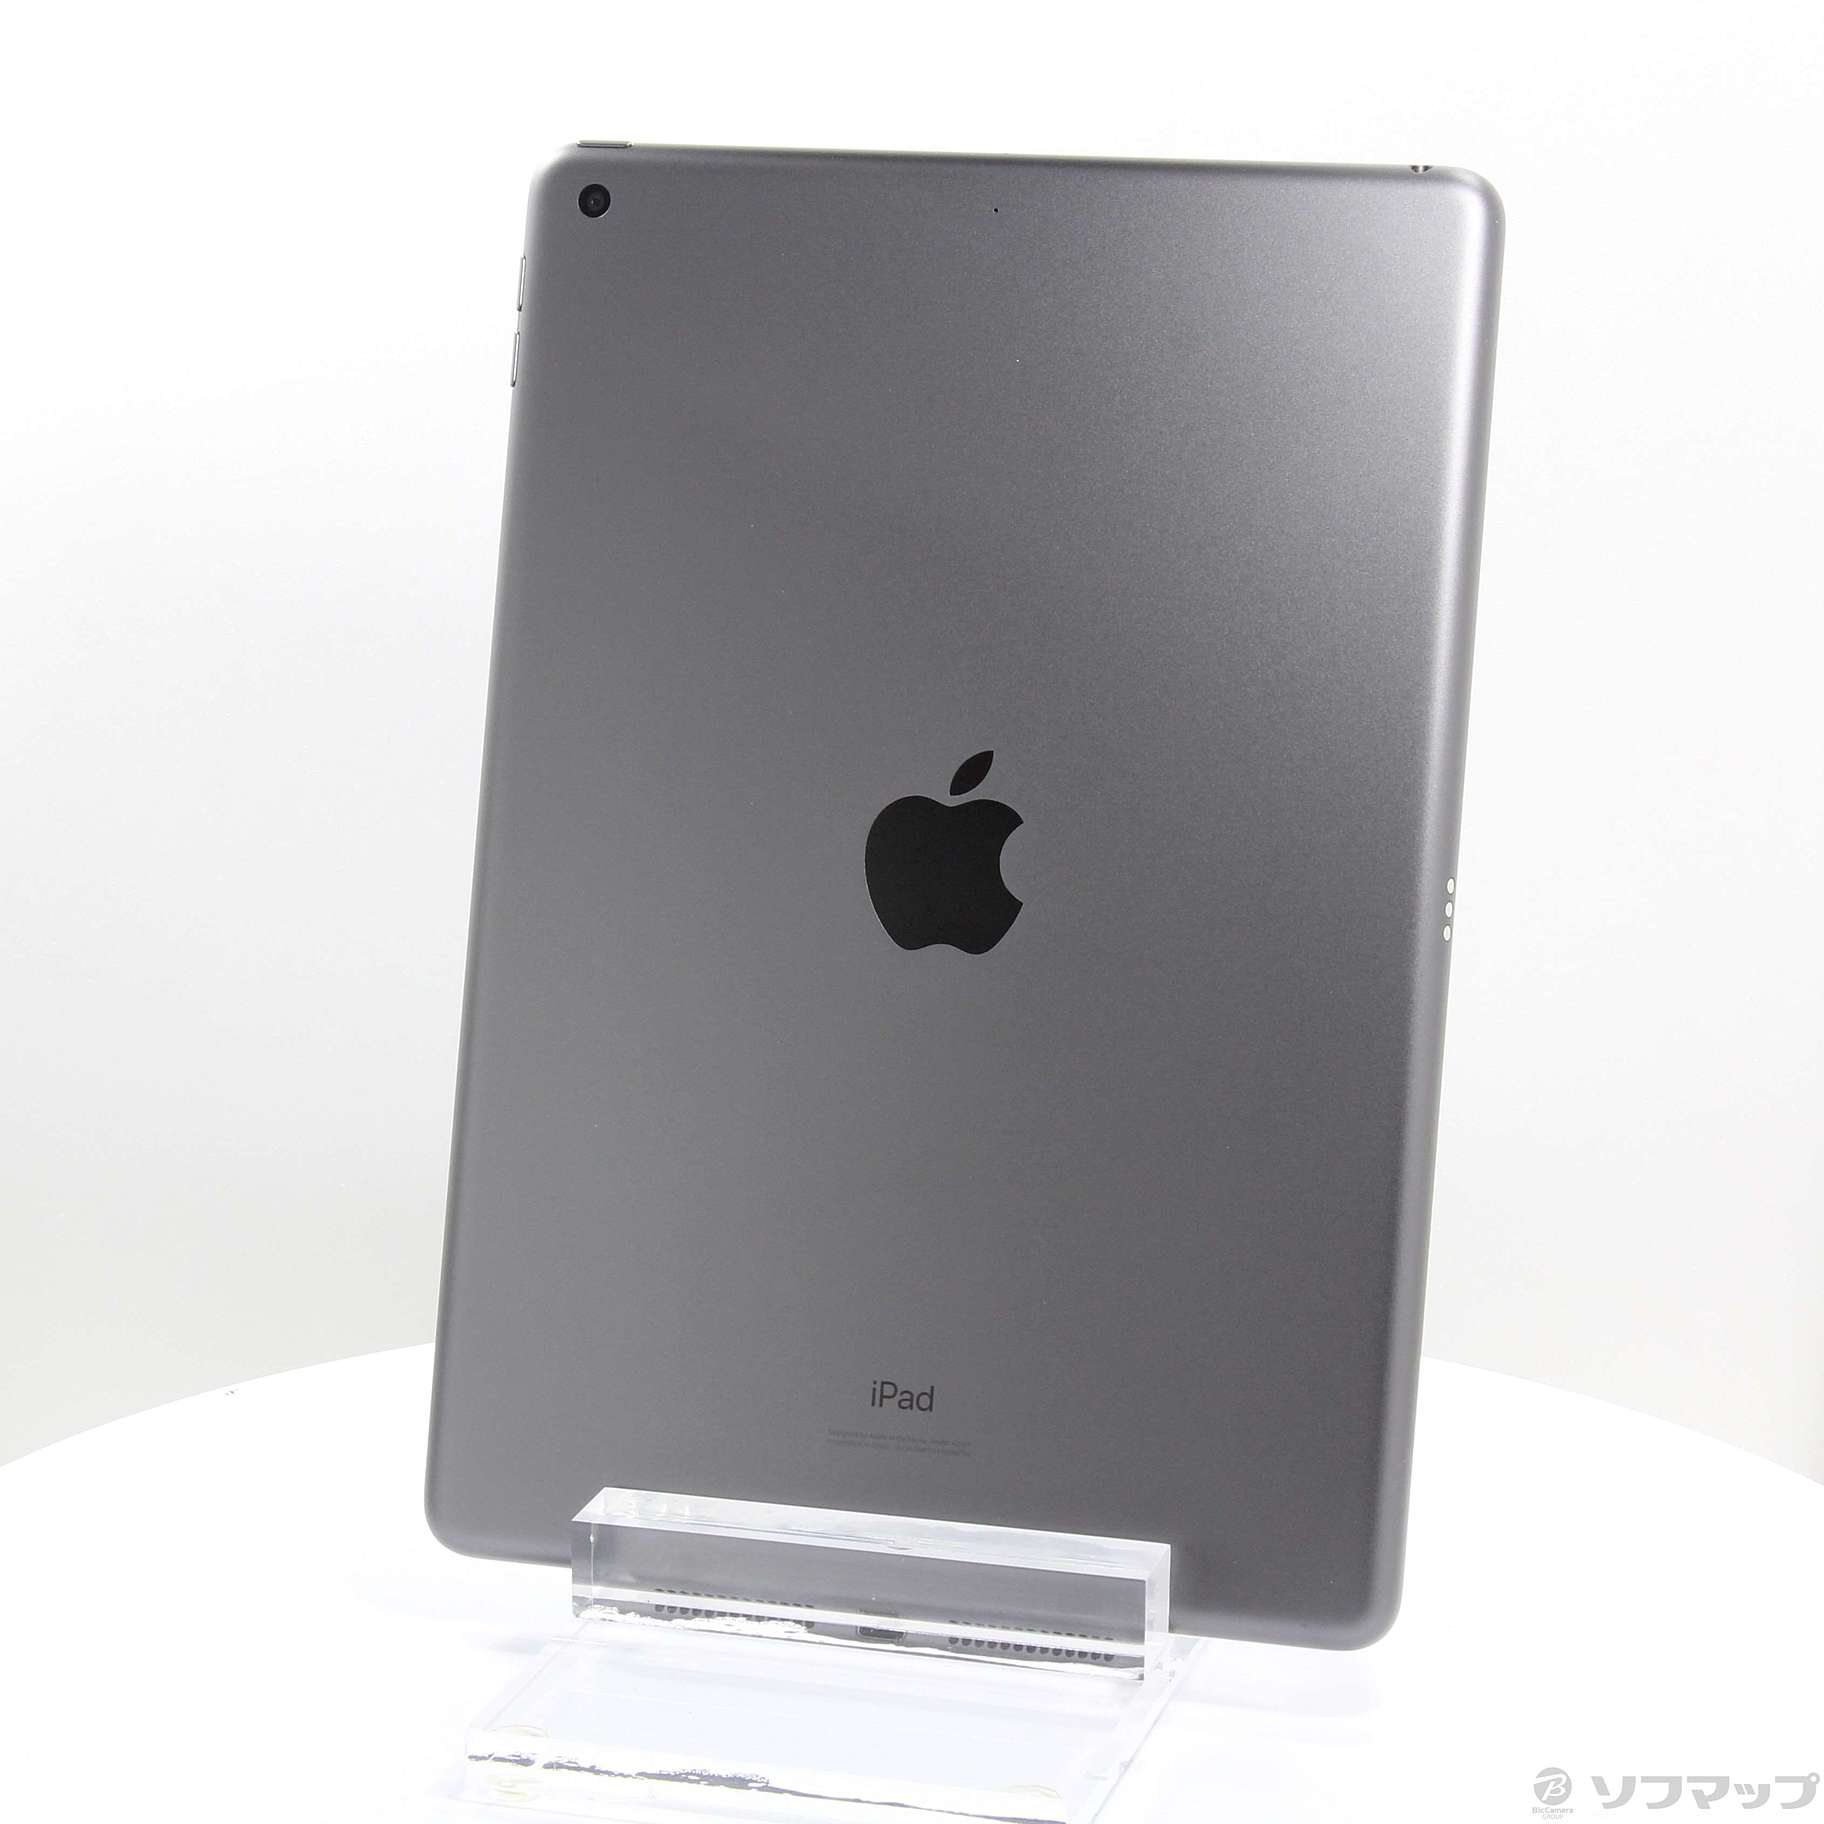 (中古)Apple iPad 第7世代 32GB スペースグレイ MW742LL/A Wi-Fi(276-ud)